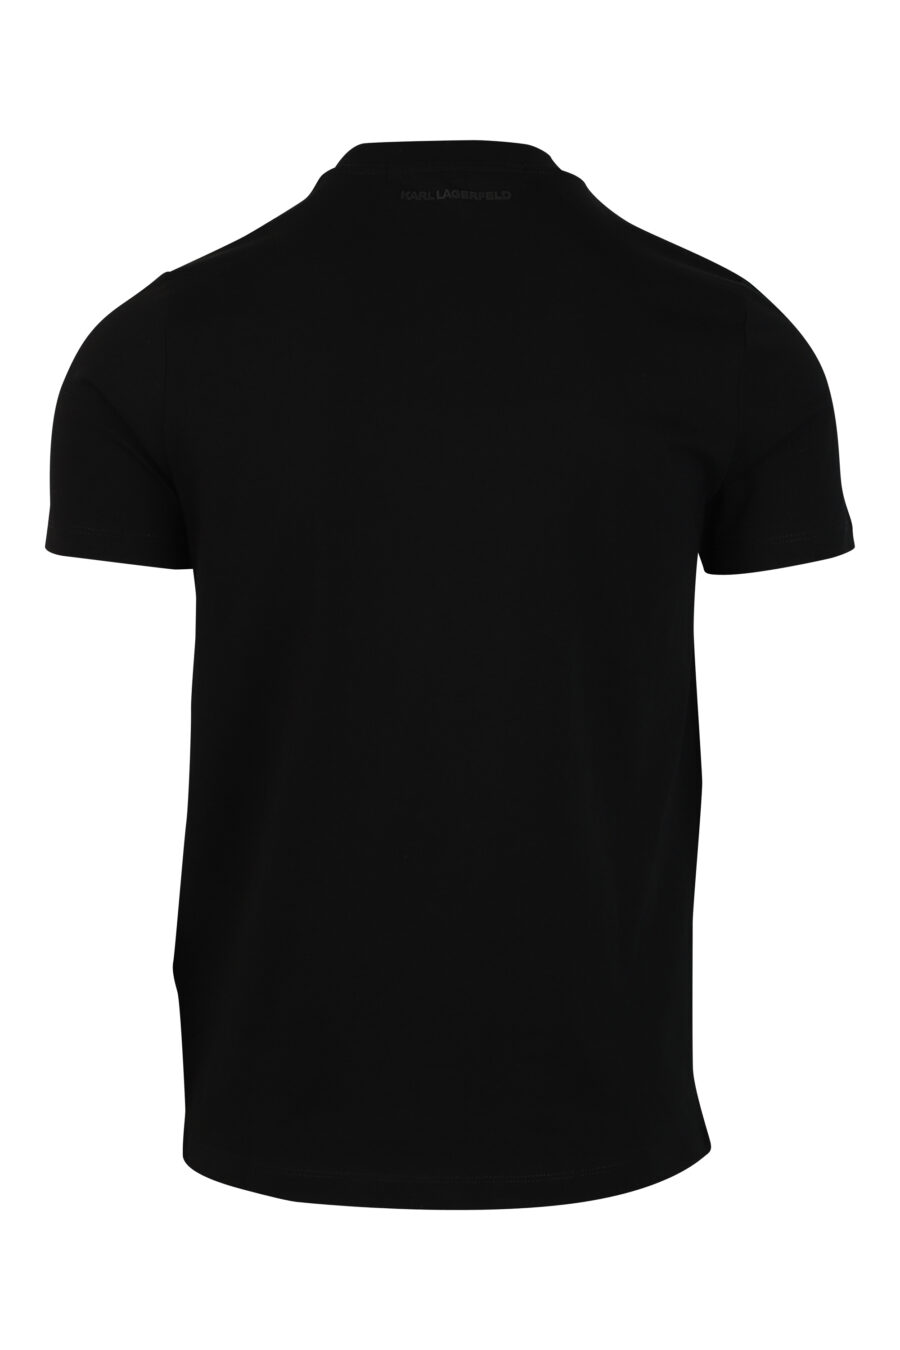 T-shirt preta com maxilogo de silhueta preta - 4062226286657 2